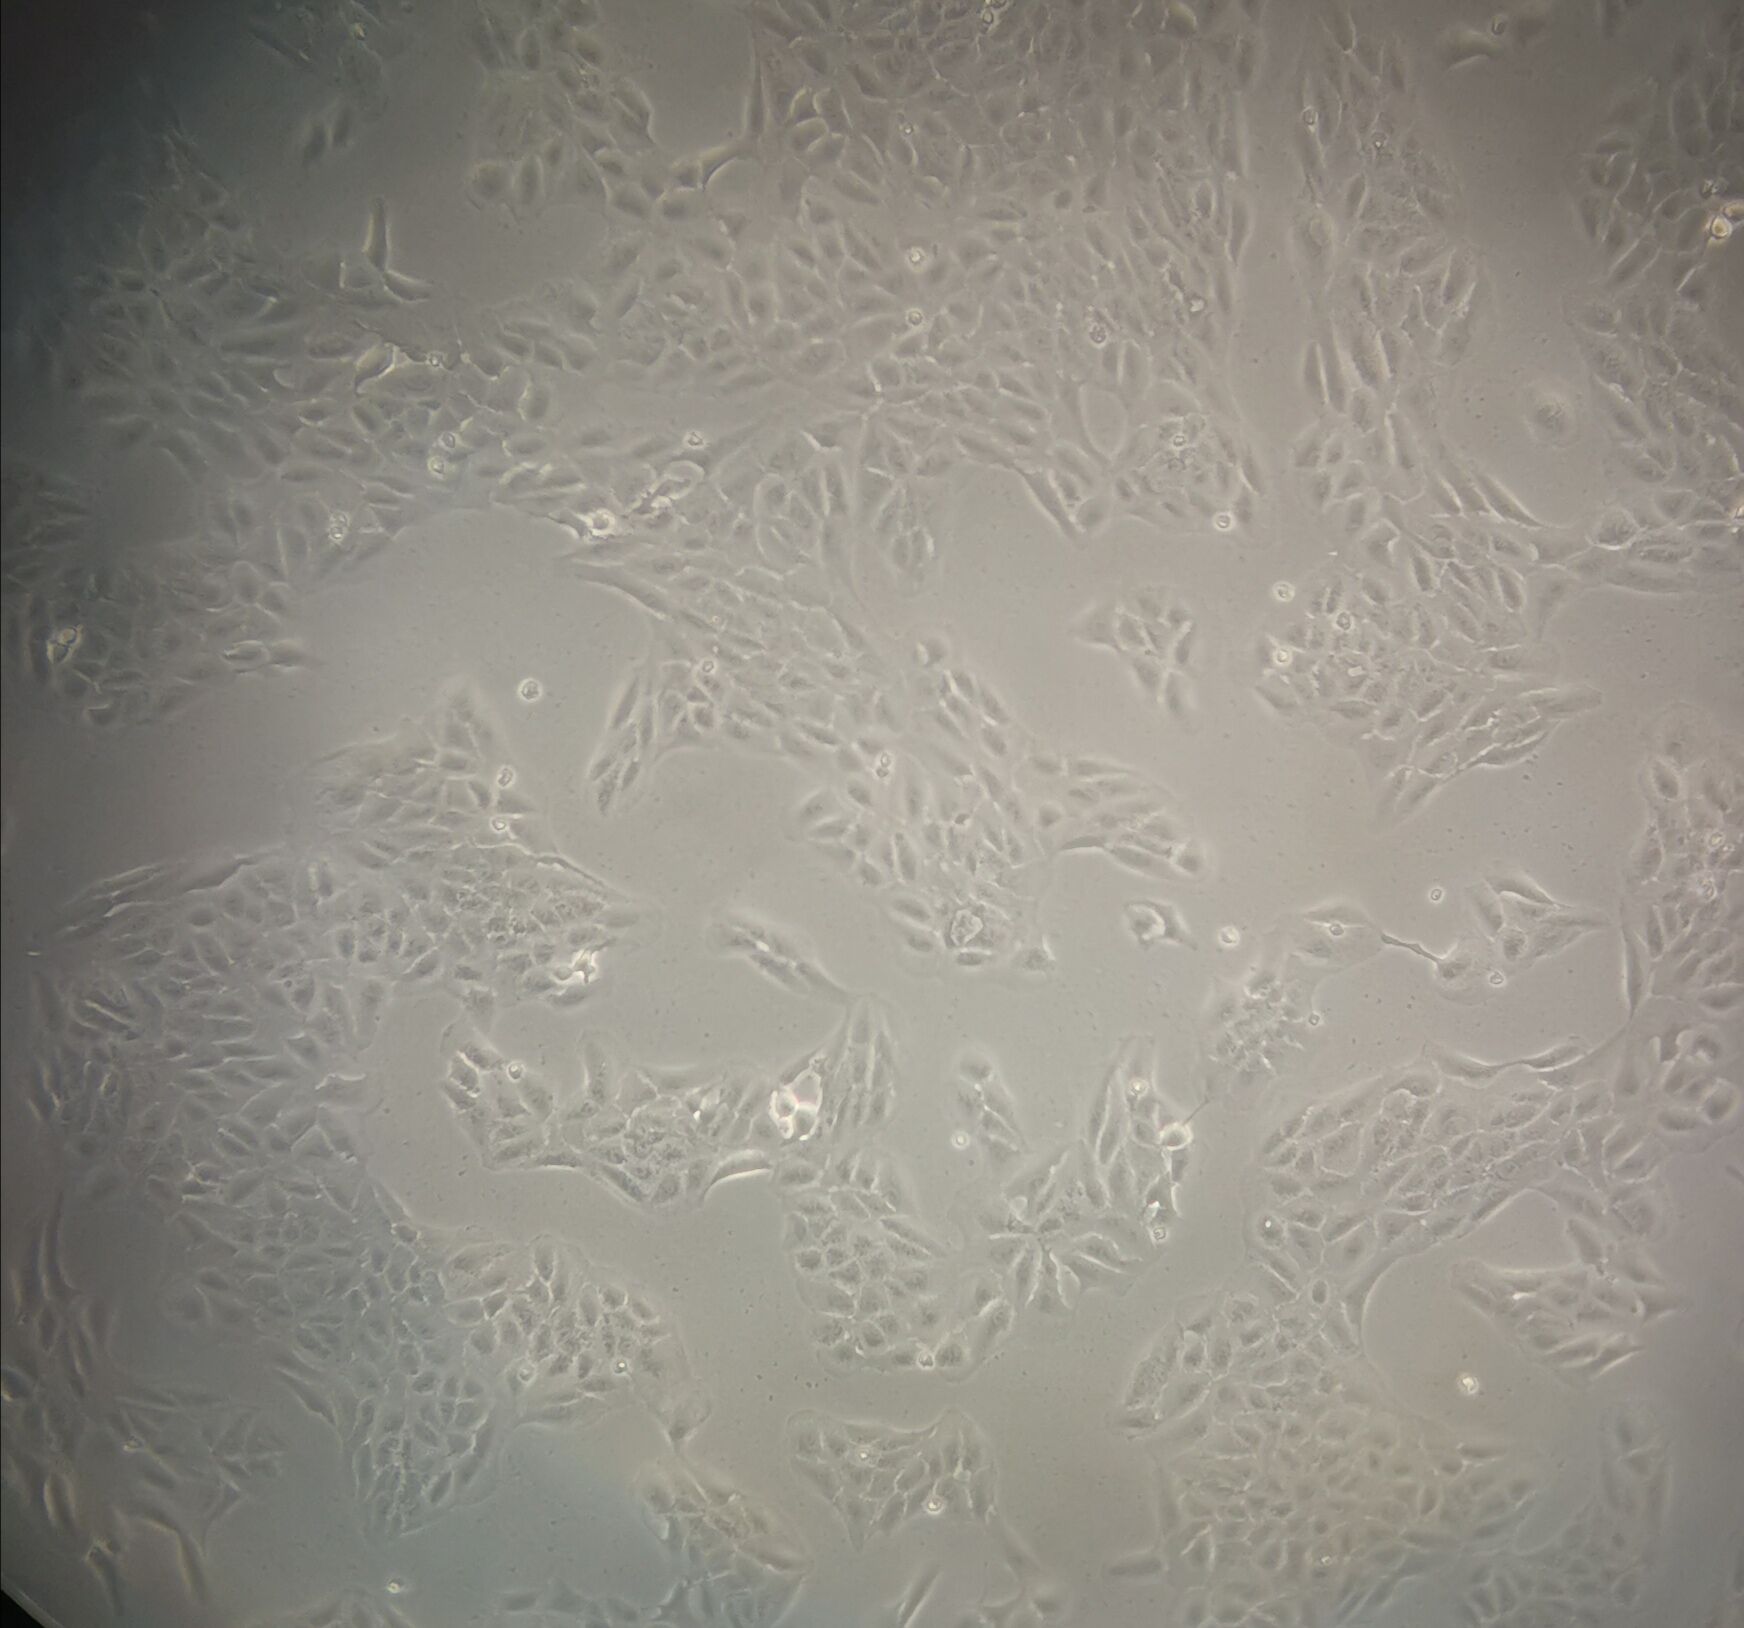 108CC15 Cell|小鼠神经母瘤与大鼠胶质瘤之融合细胞,108CC15 Cell